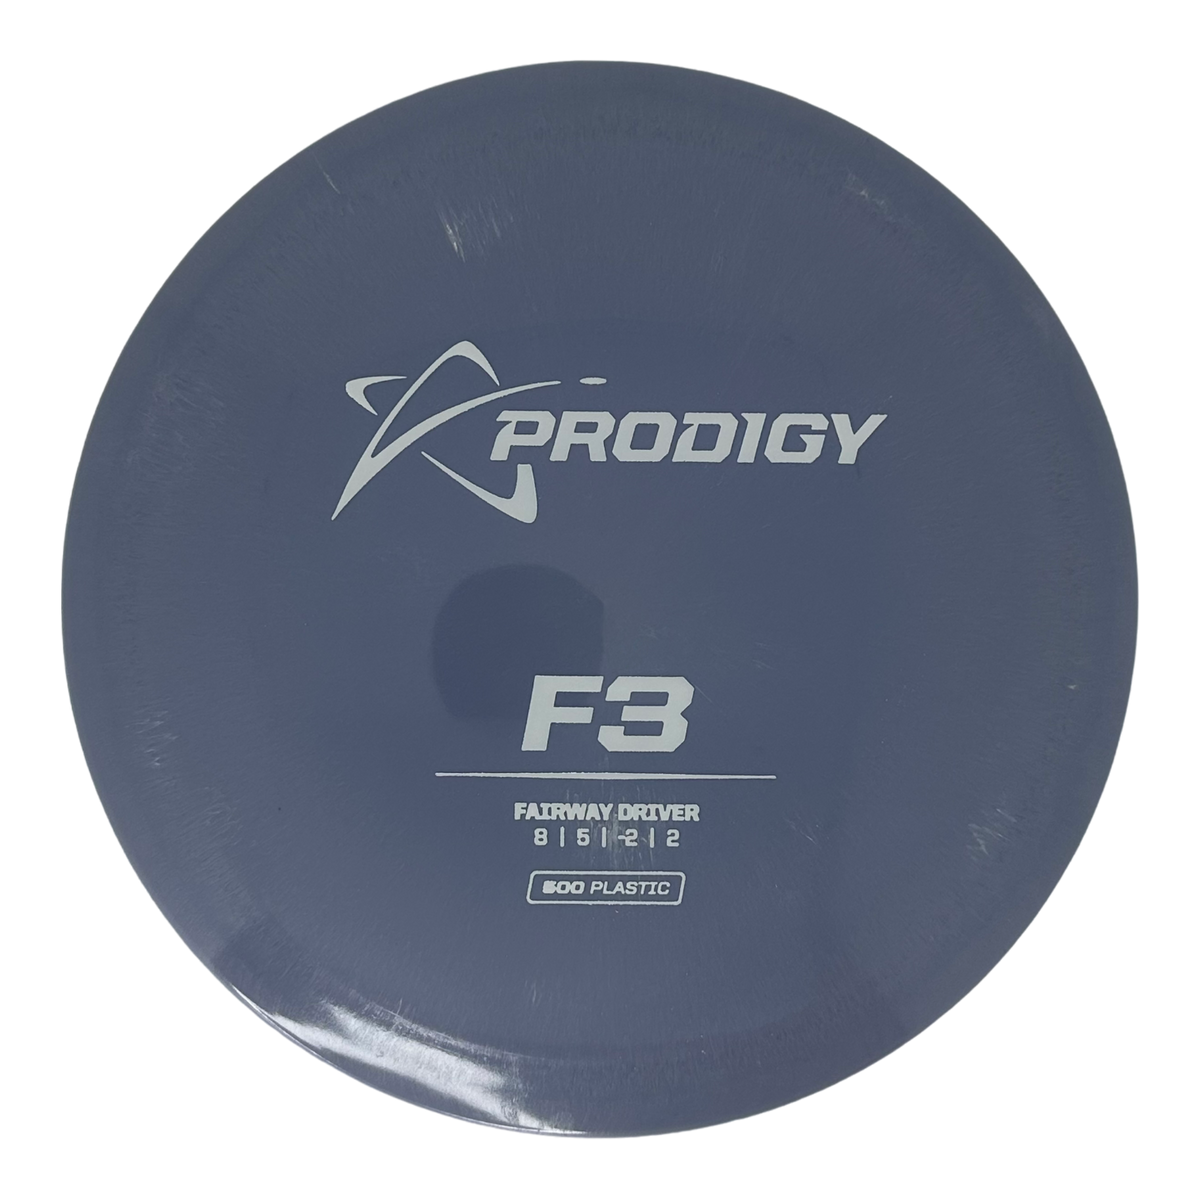 Prodigy 500 F3